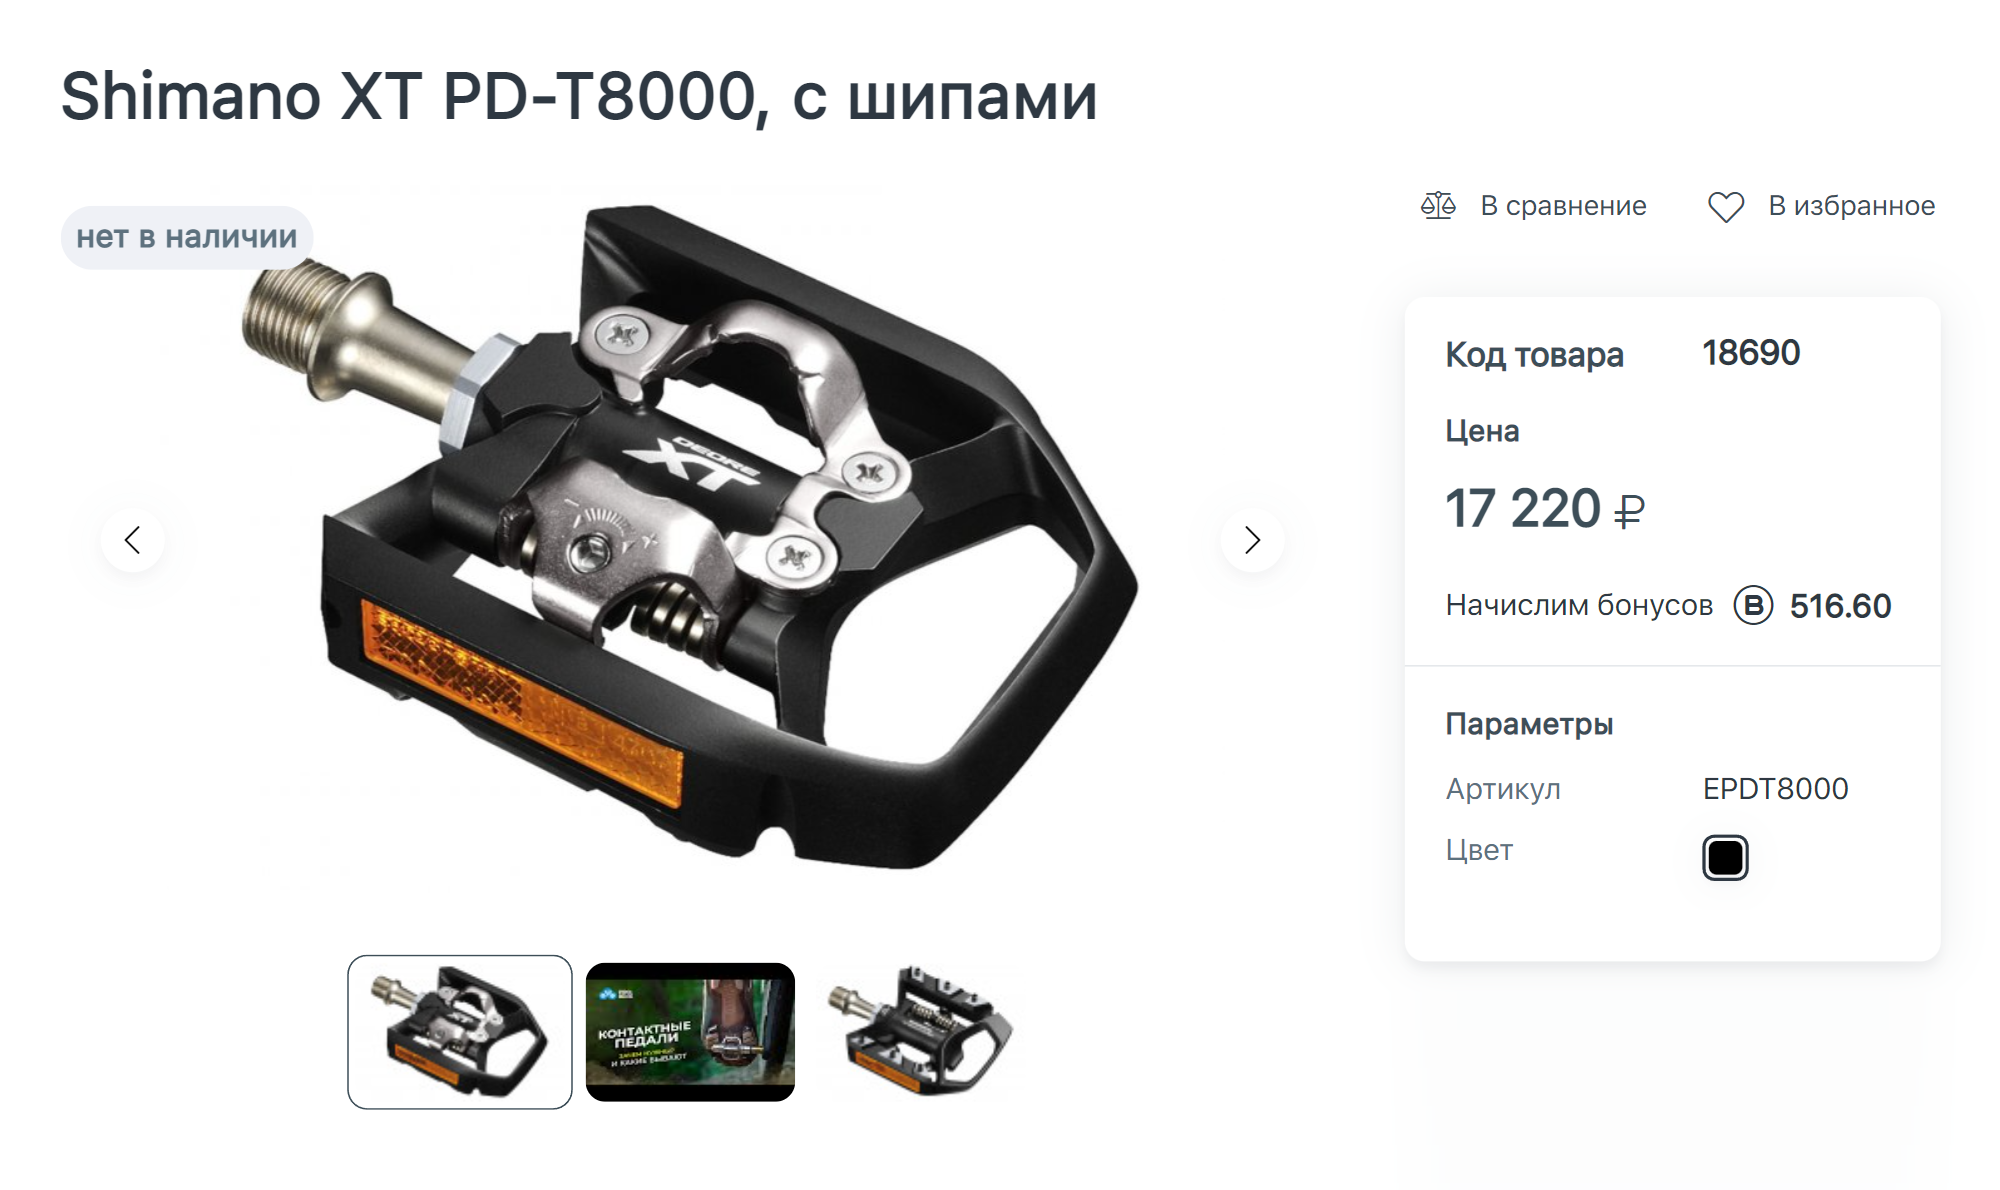 Подобные новые педали Shimano стоят более 17 000 ₽. Так что мне очень повезло найти такие подержанные почти в 30 раз дешевле. Источник: pro⁠-⁠bike.ru